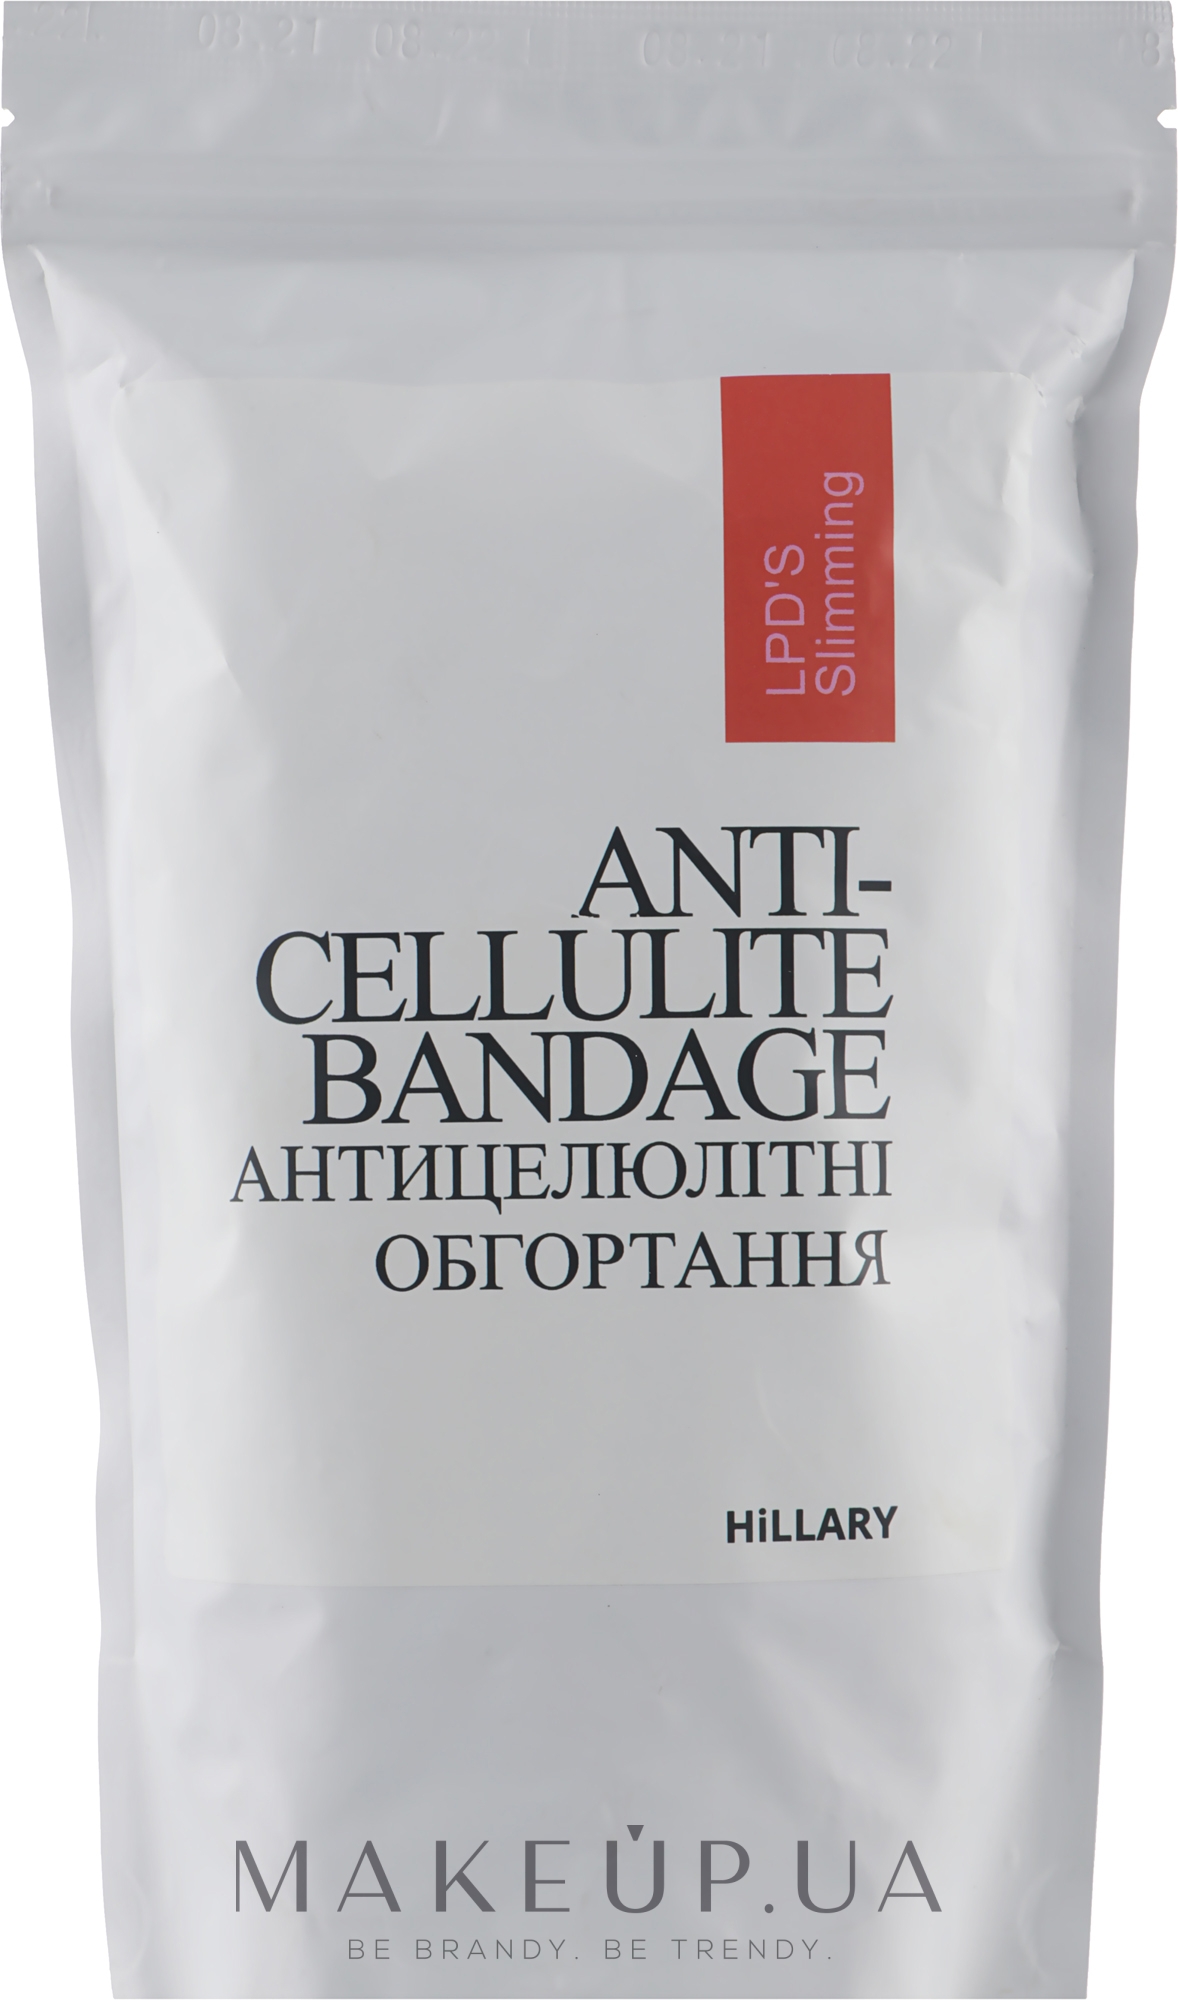 Антицеллюлитные липосомальные обертывания - Hillary Anti-cellulite Bandage LPD'S Slimming — фото 200g